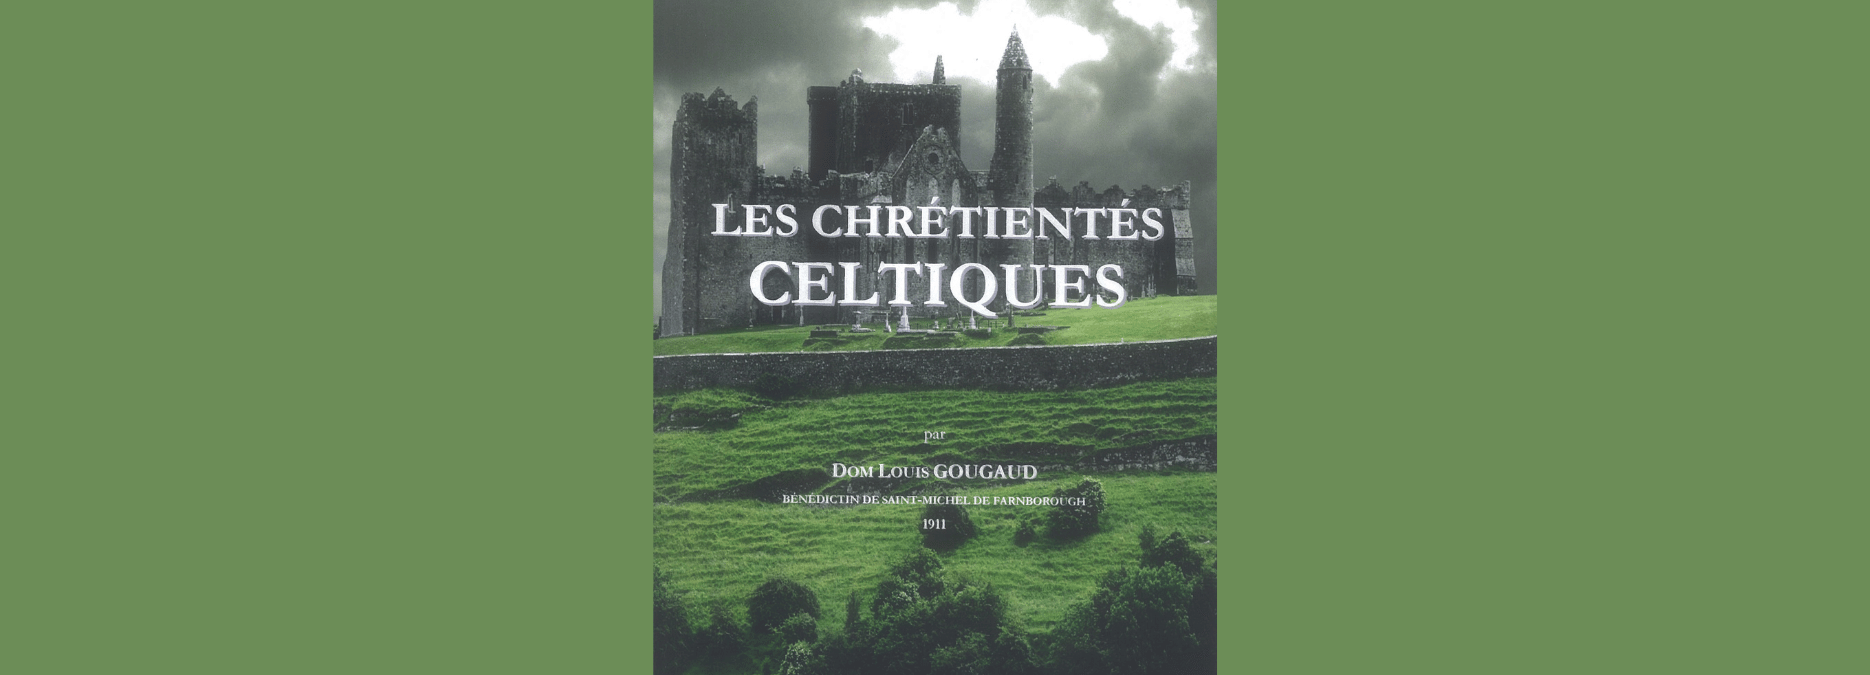 Les chrétientés celtiques, par dom Louis Gougaud